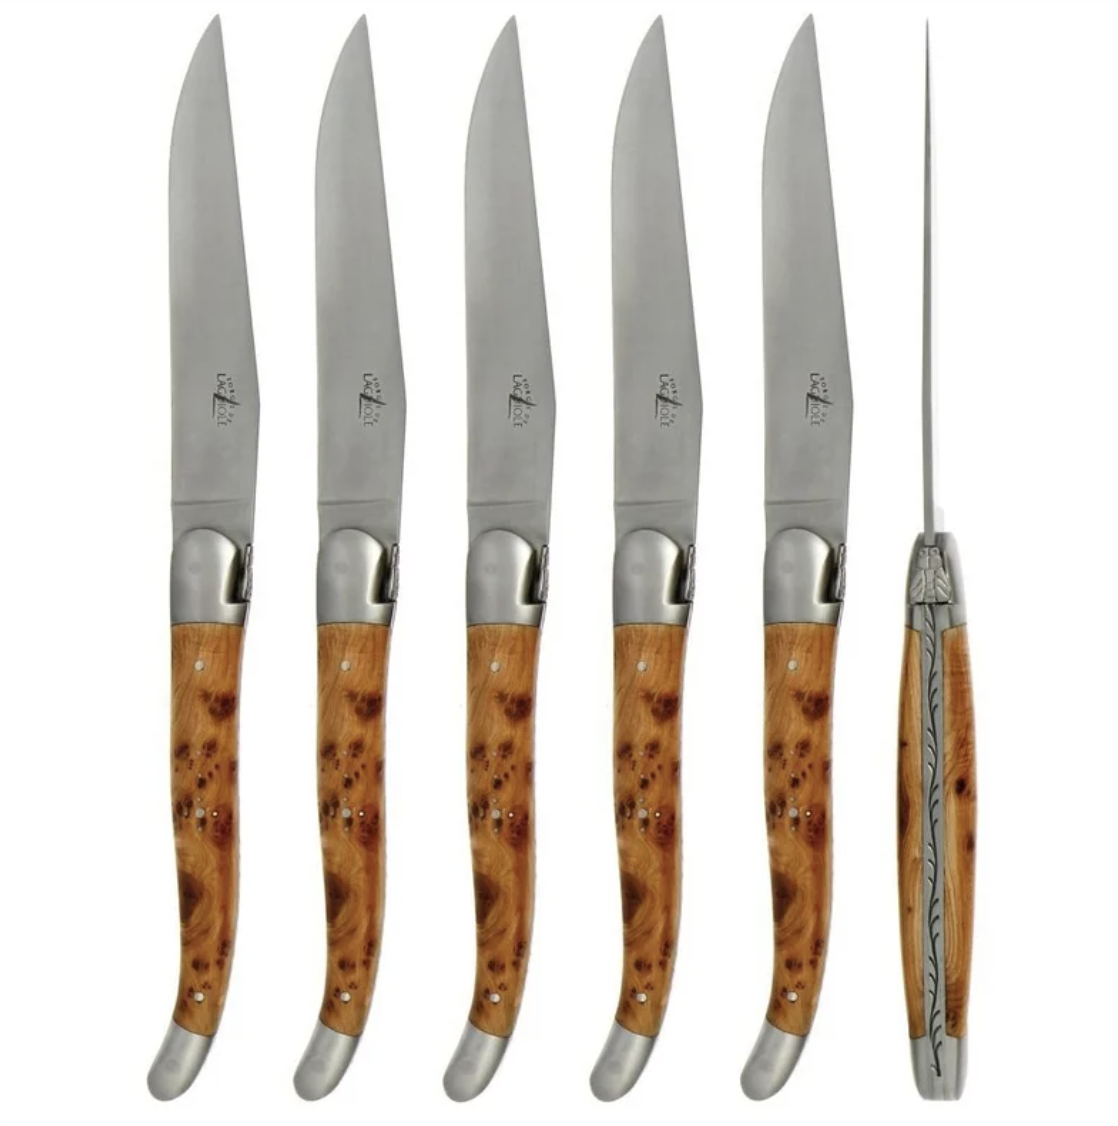 https://cdn.shoplightspeed.com/shops/610486/files/44761064/forge-de-laguiole-juniper-6-piece-steak-knife-set.jpg